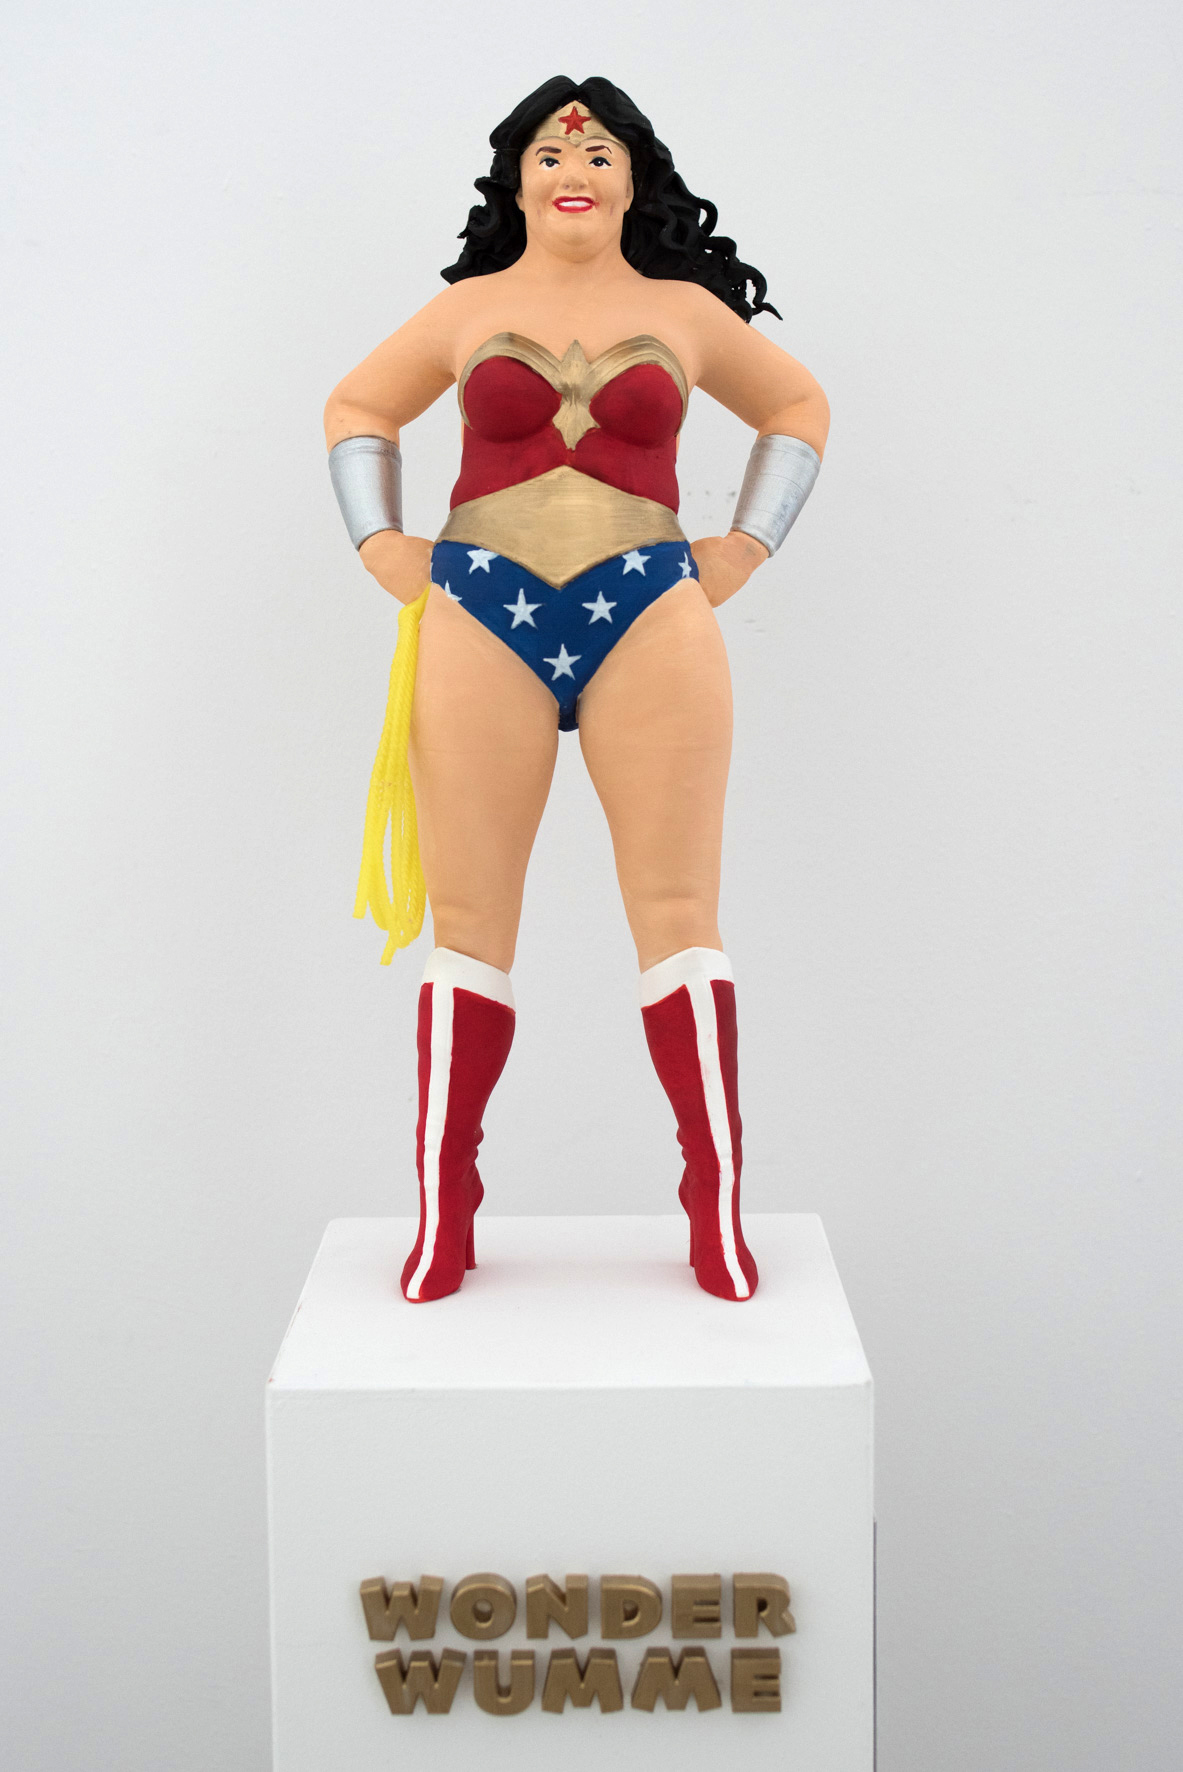 Wonder Woman Ausstellung im Jahr 2017 im Cöln Comic Haus